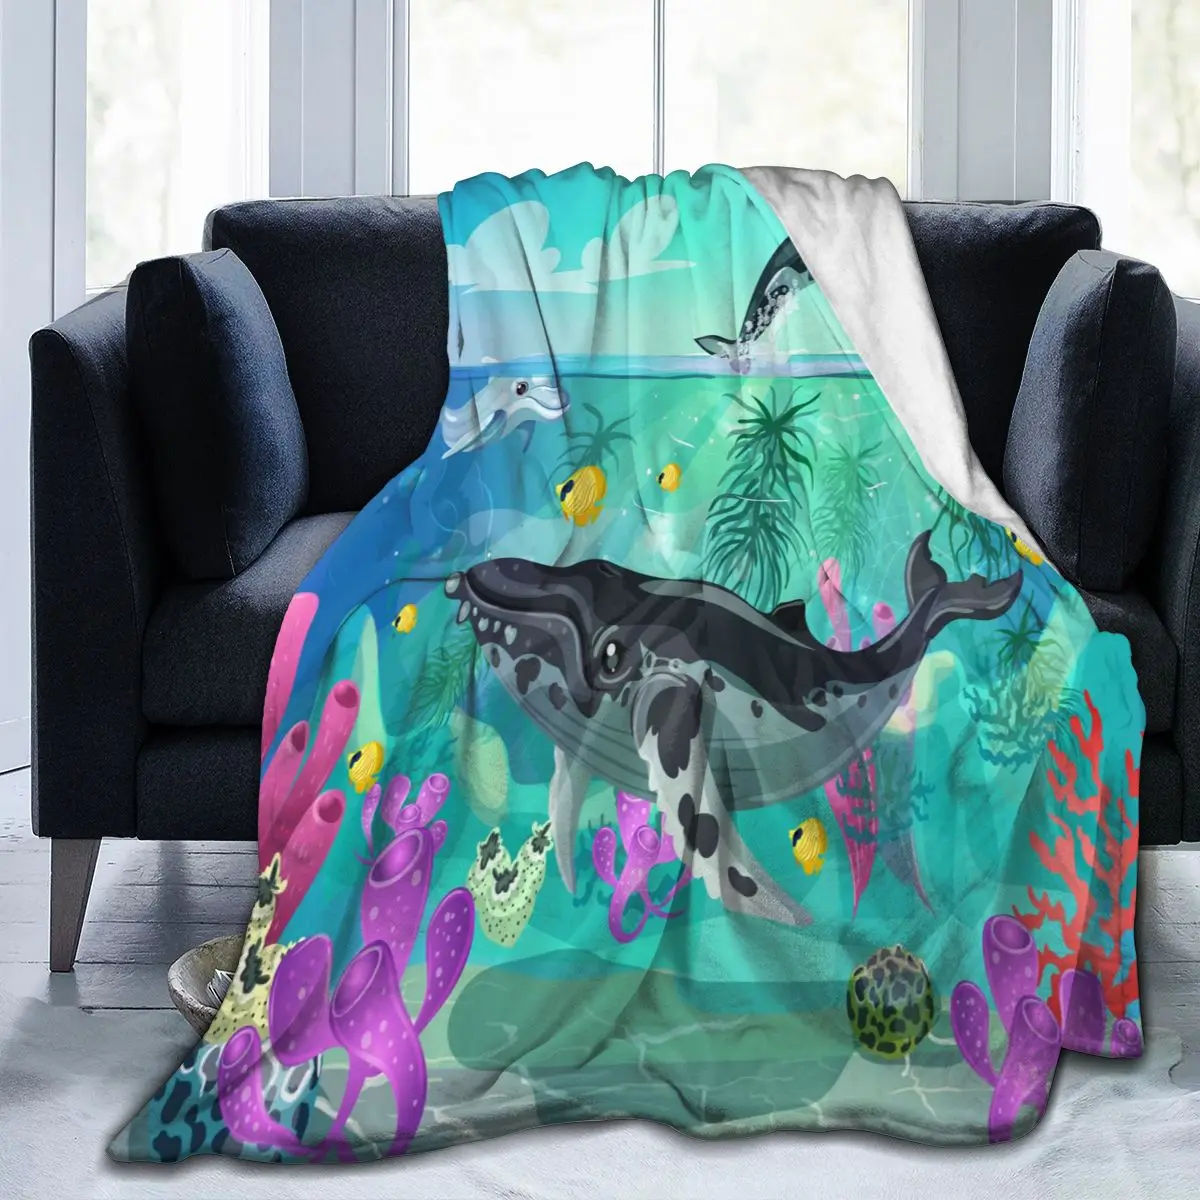 

Фланелевое Одеяло с мультяшным рисунком Морская жизнь ультра-мягкое Флисовое одеяло для халата дивана кровати путешествия дома зима весна ...